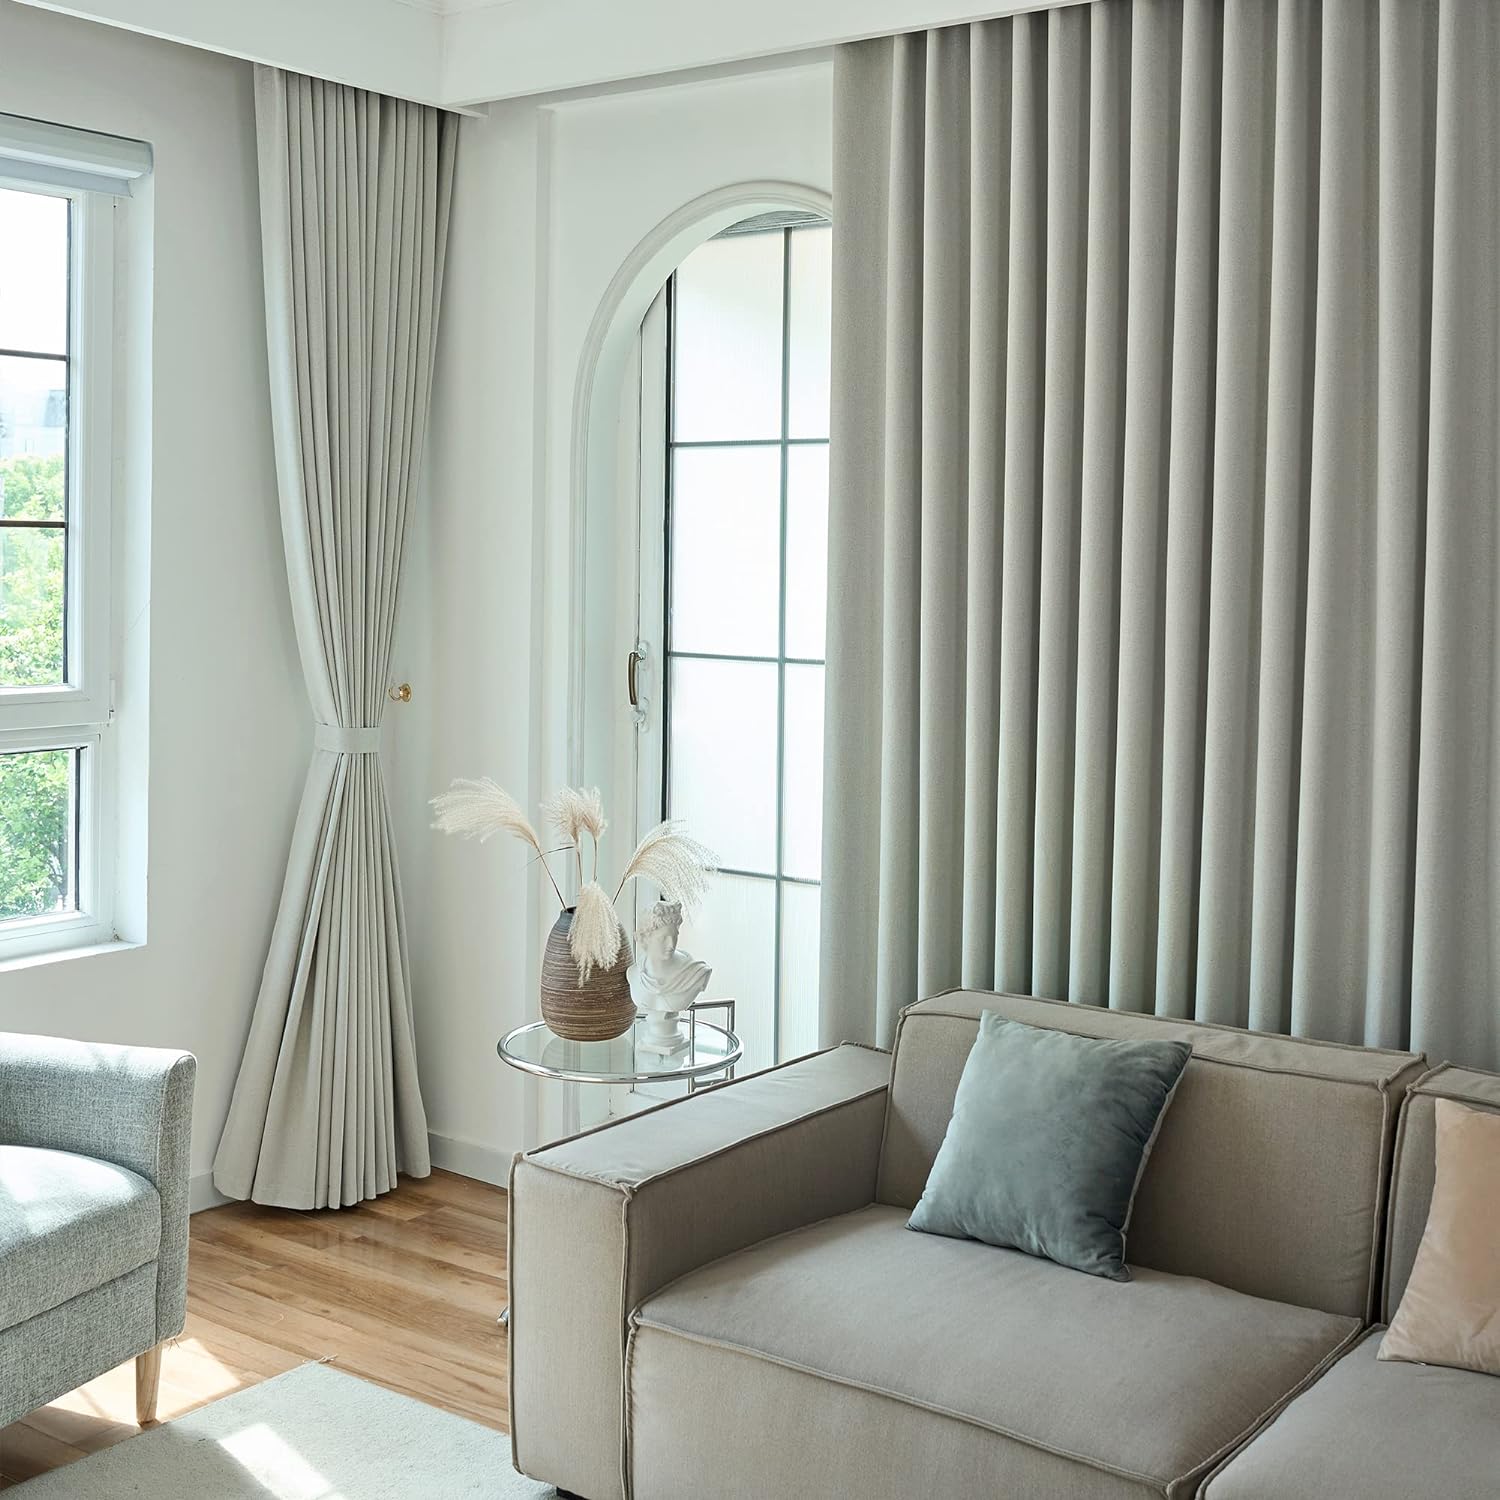 Venta al por mayor Alfombras minimalistas para sala de estar Proveedor y  proveedor de alfombras suaves grandes amarillas y grises